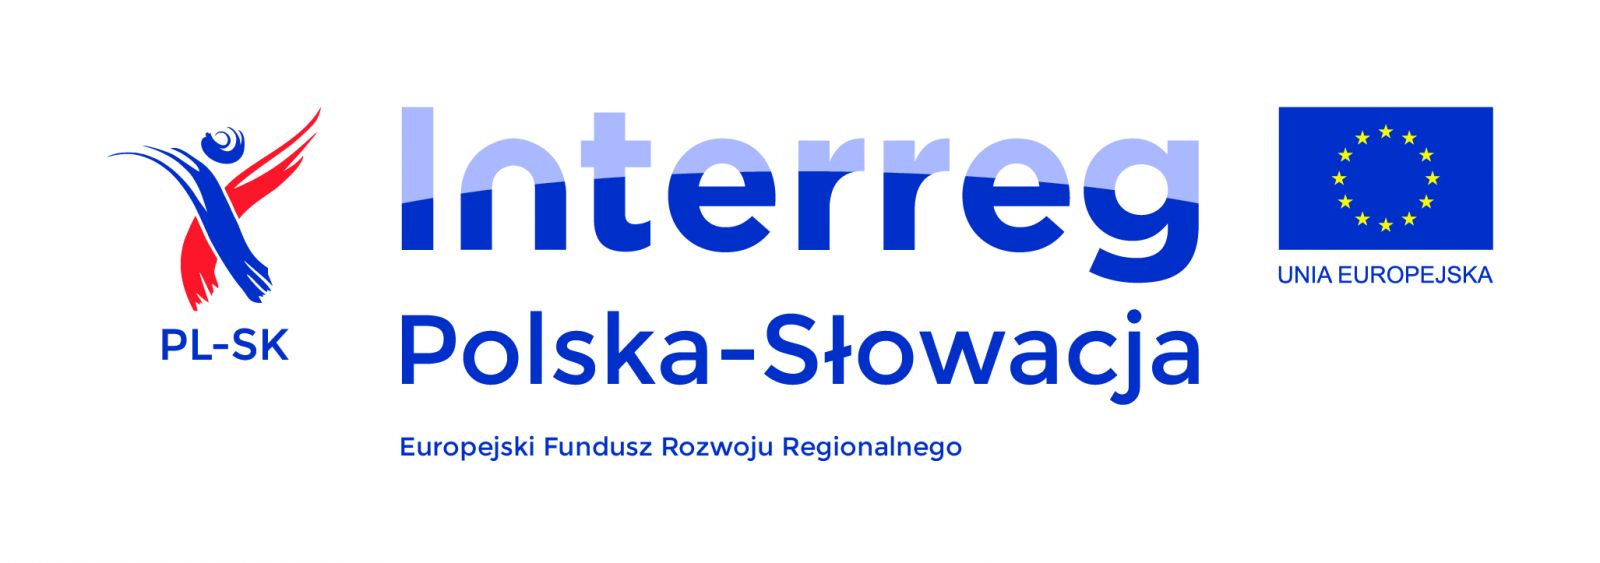 Interreg Polska - Słowacja logotypy